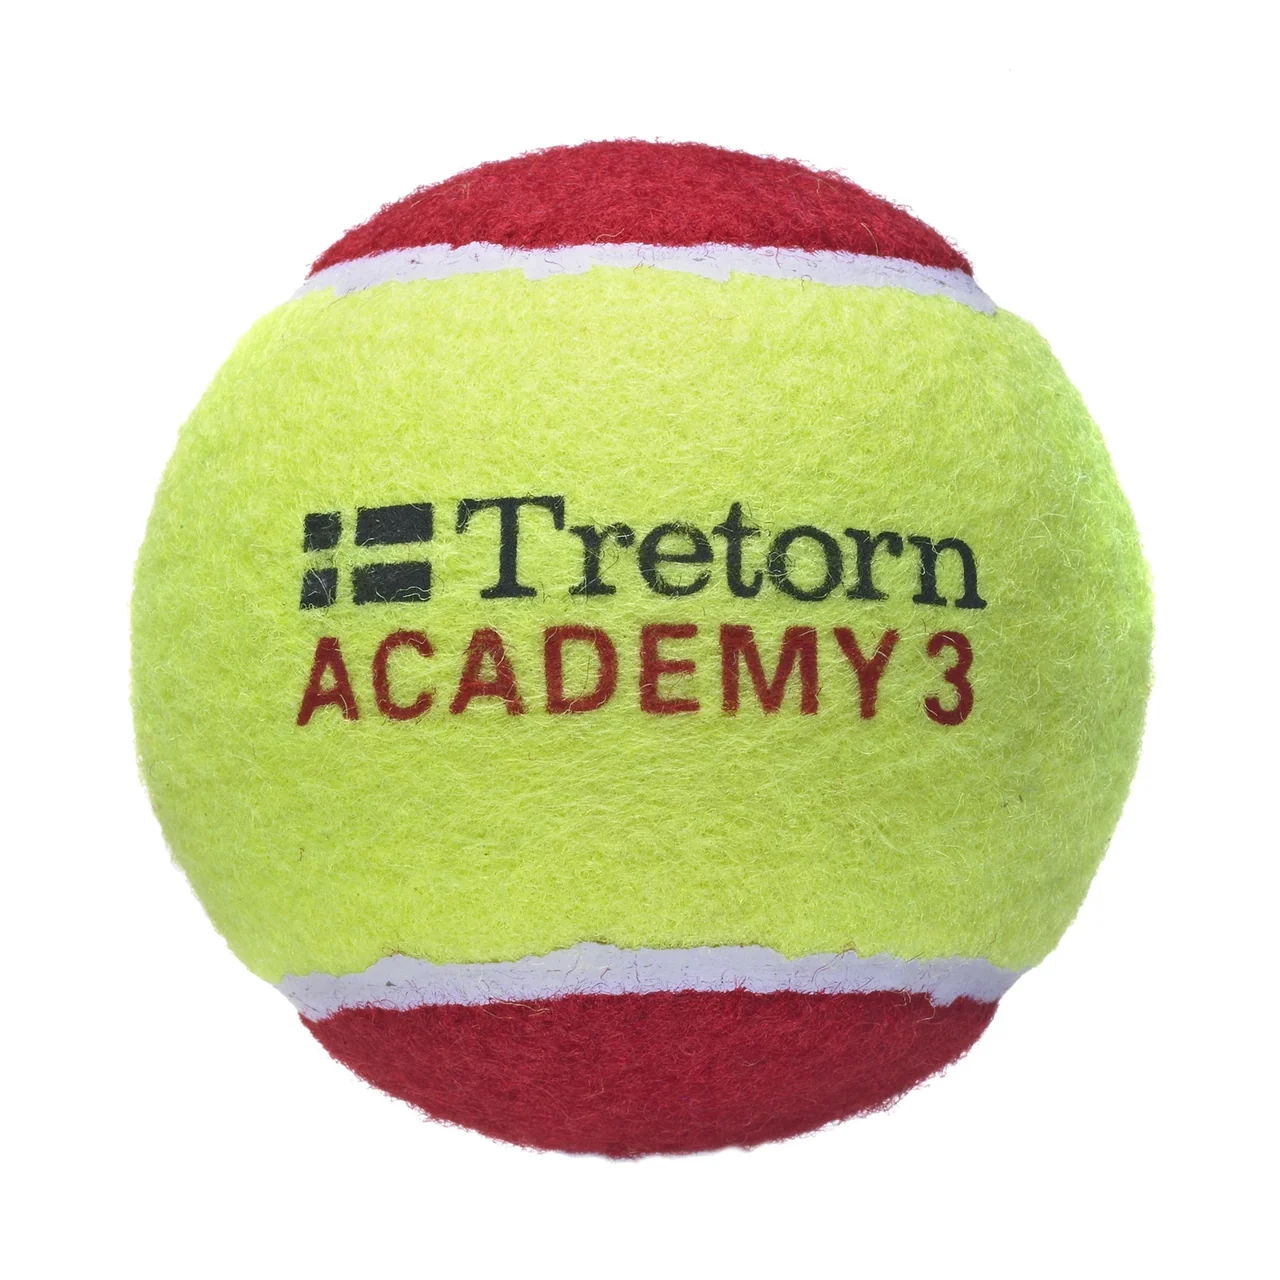 Tretorn Academy Redfelt 36 balles